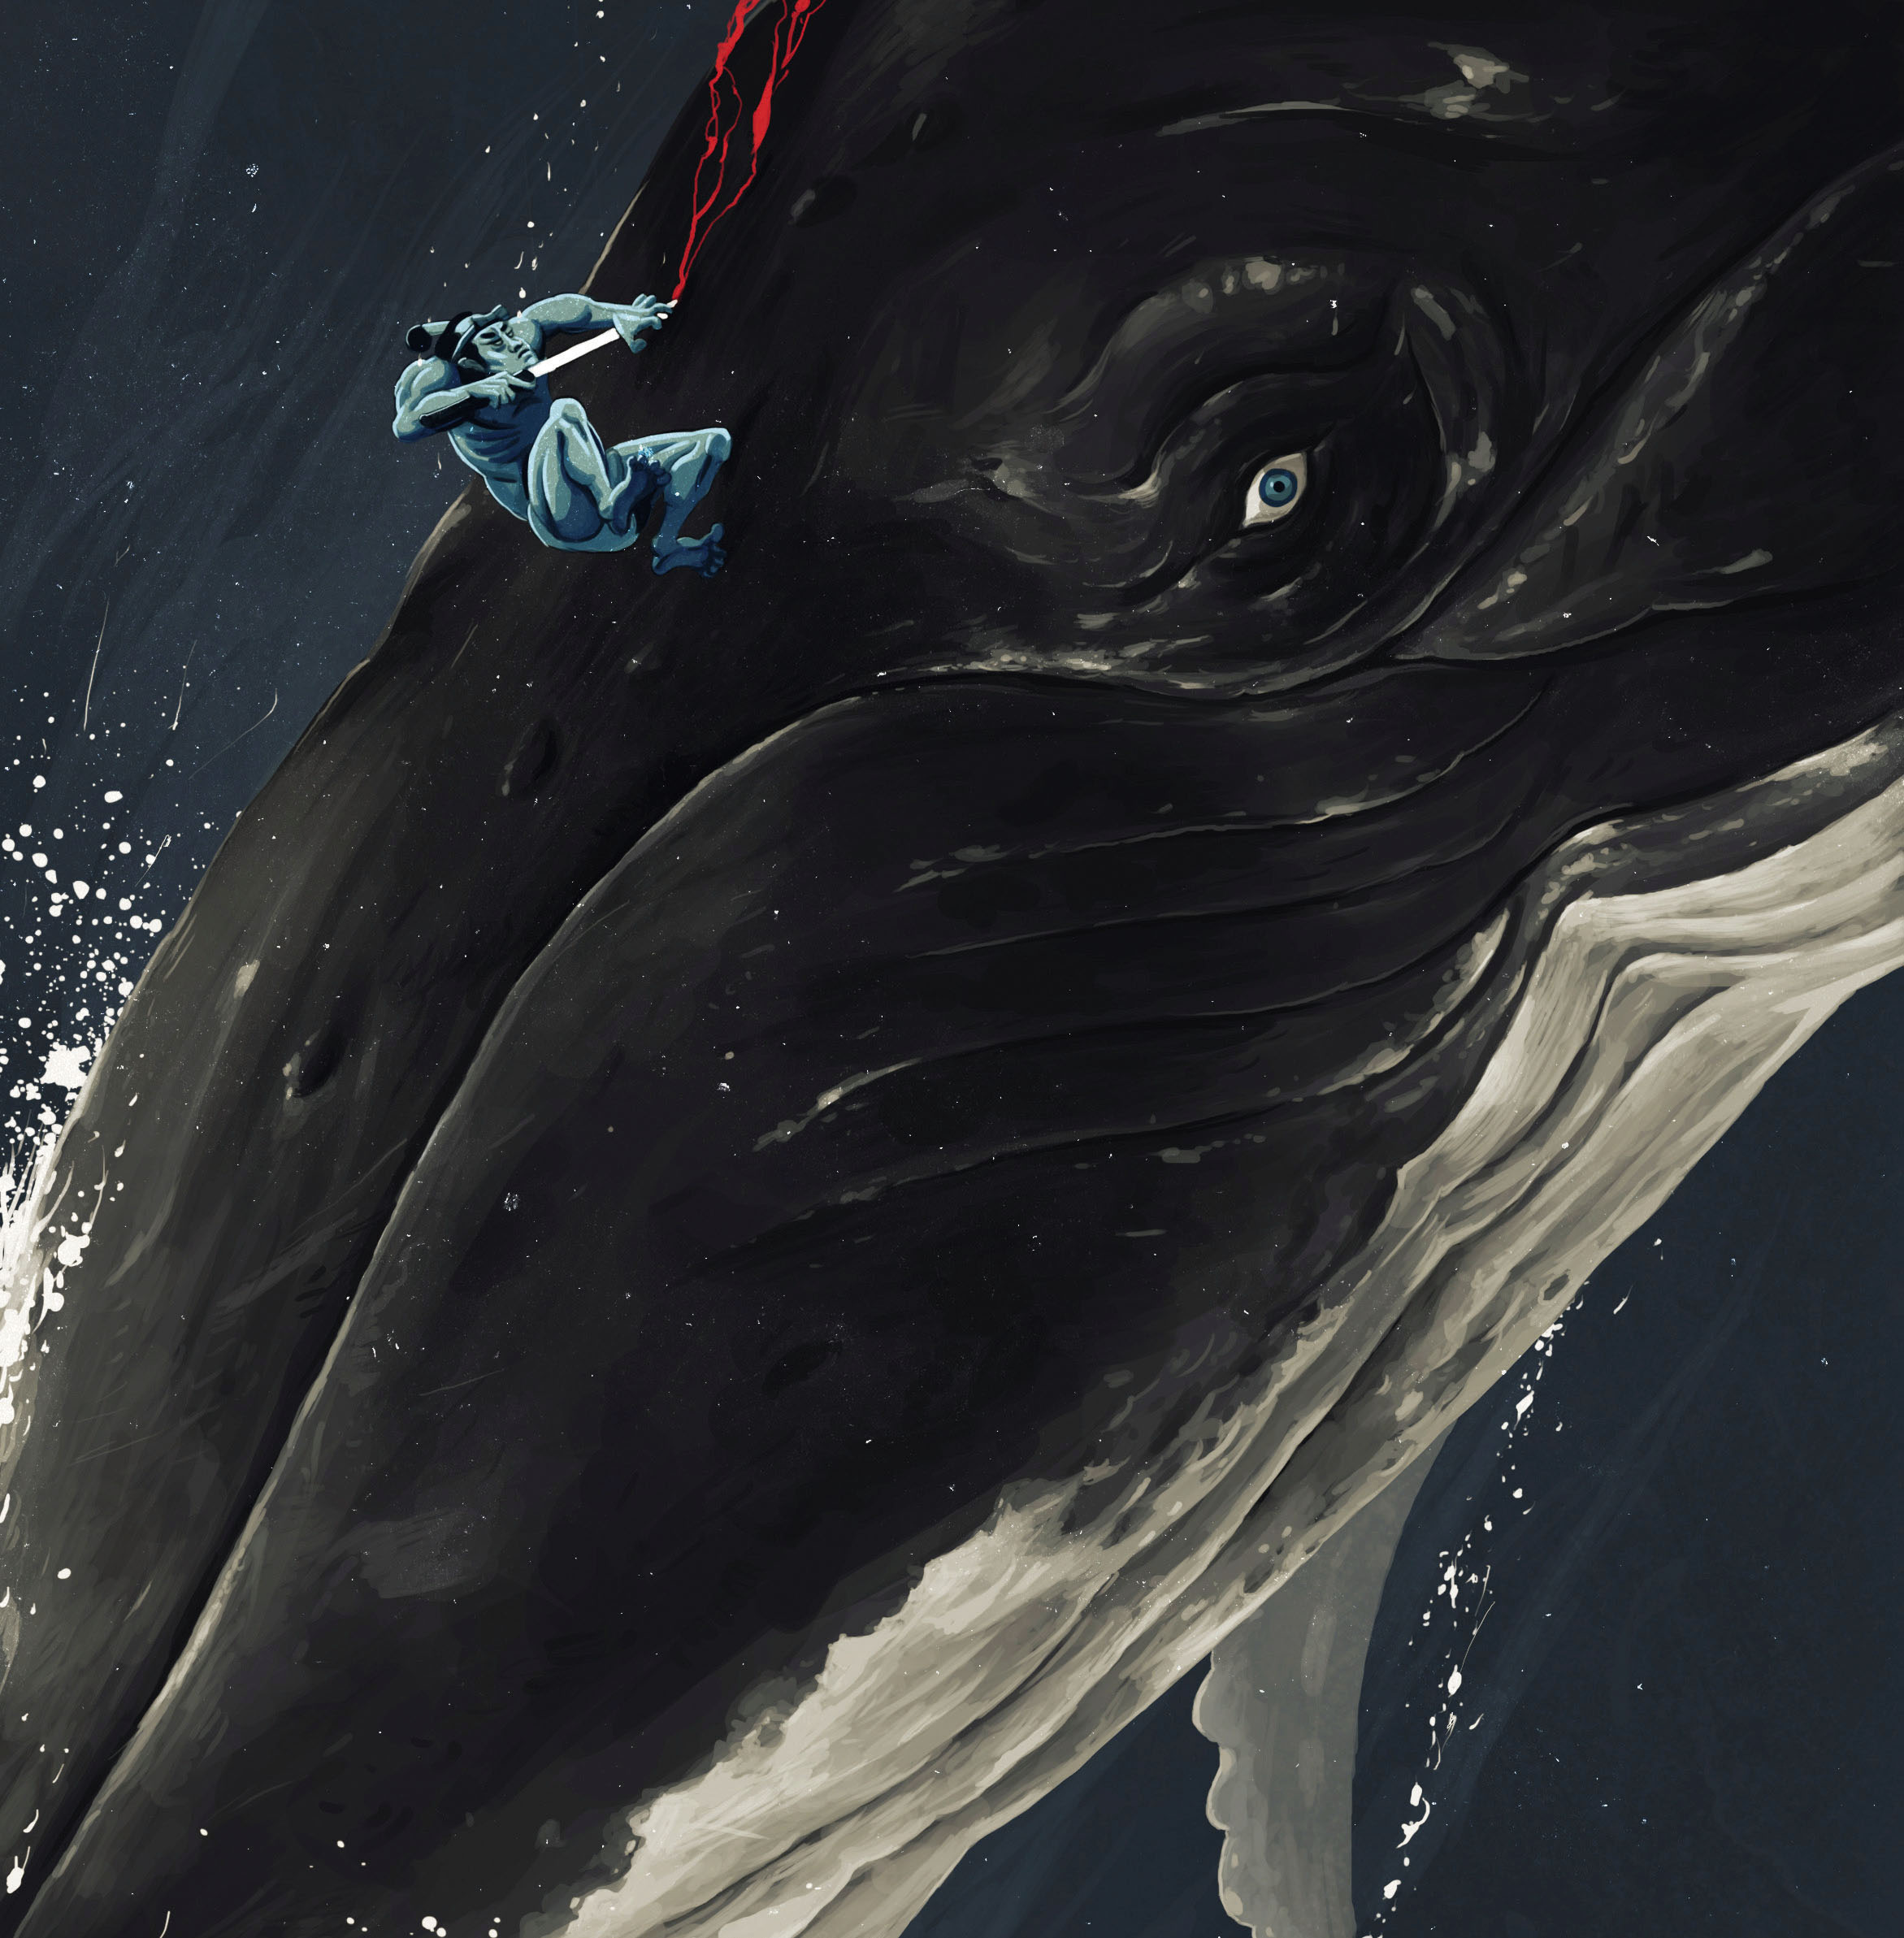 海底大猎杀梅尔维尔鲸图片